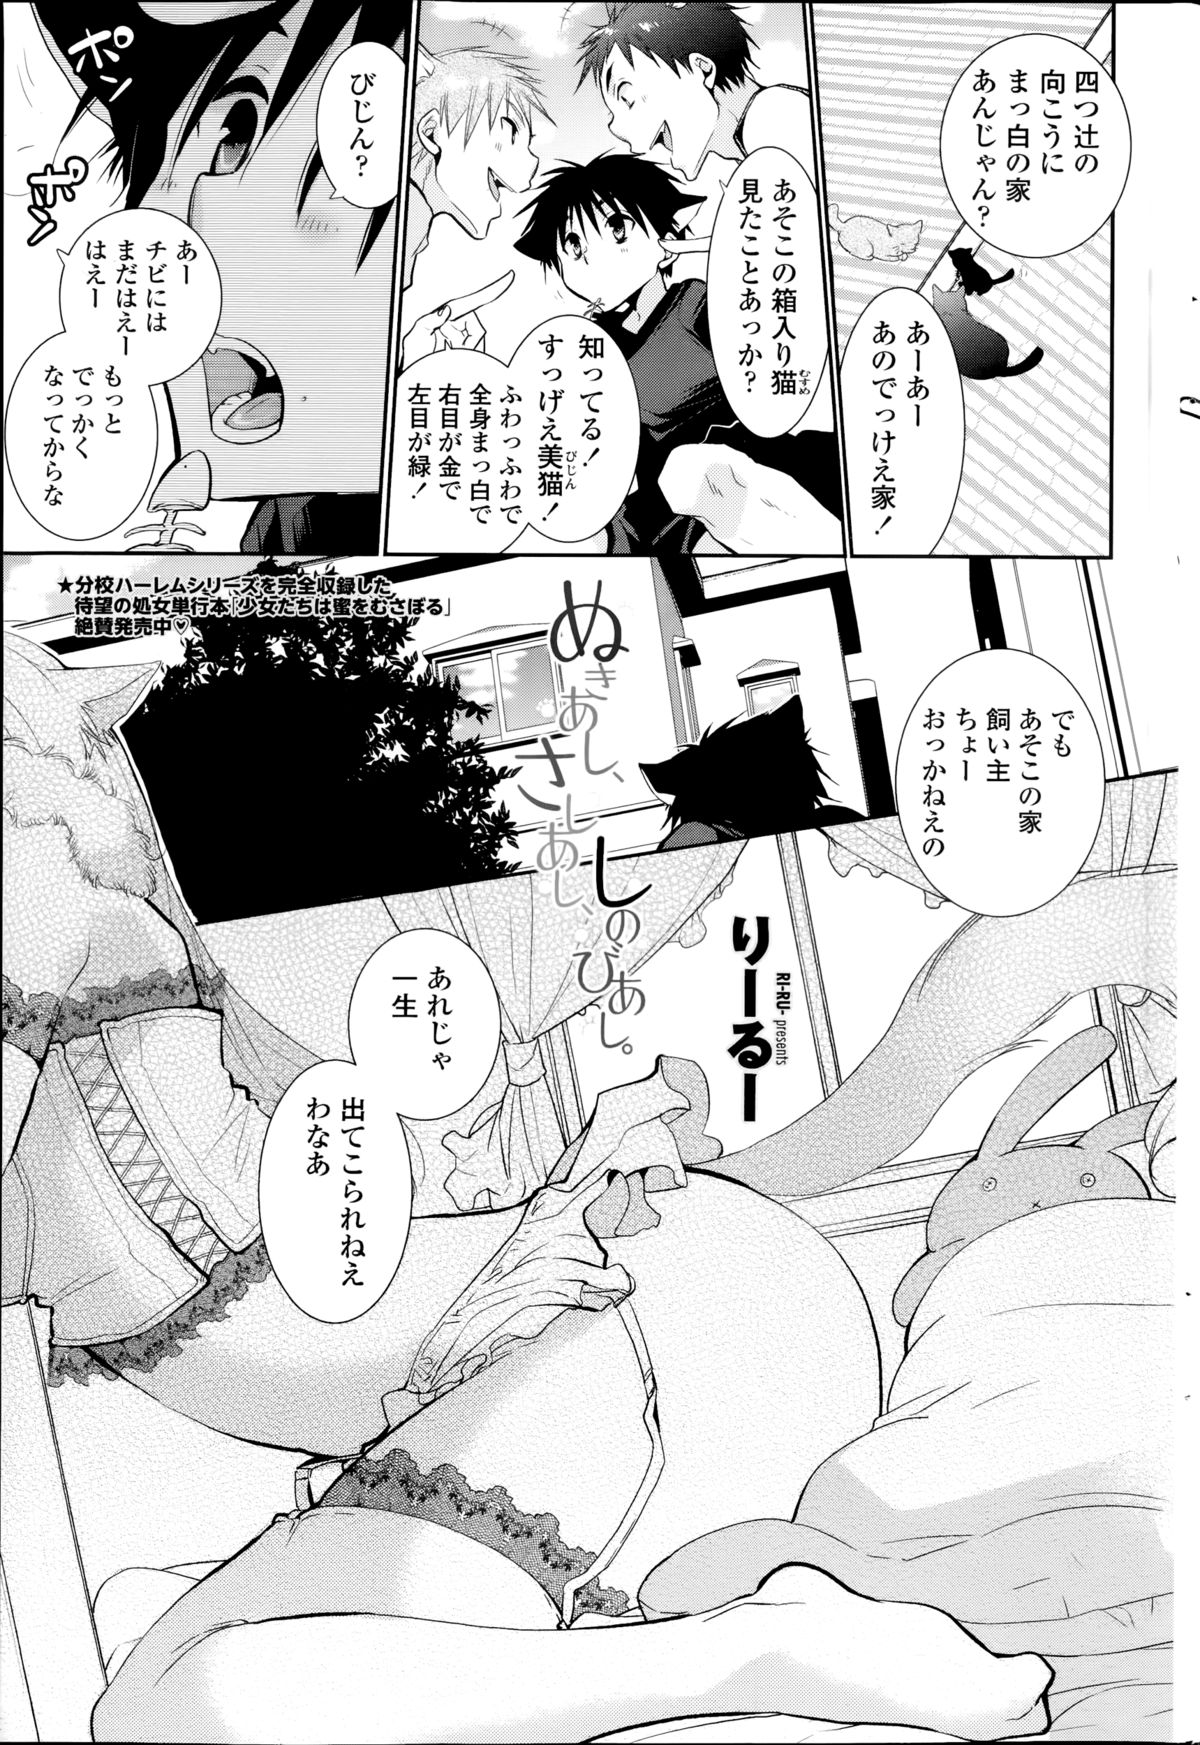 [Ri-ru-] Nuki Ashi, Sashi Ashi, Shinobi Ashi. Ch.1-2 page 1 full